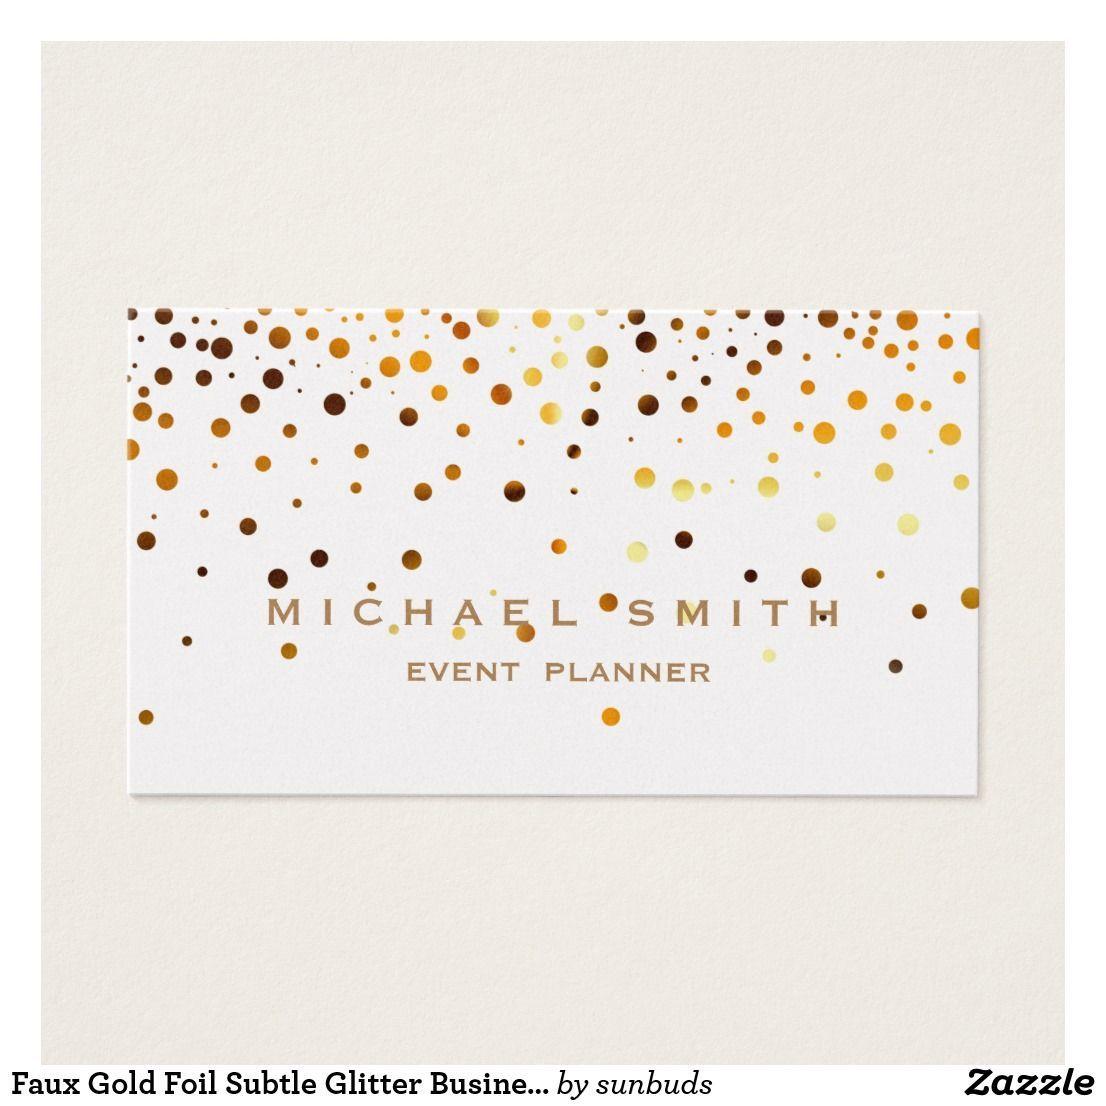 Subtle Glitter Logo - Faux Gold Foil Subtle Glitter Business Card | Zazzle Business cards ...